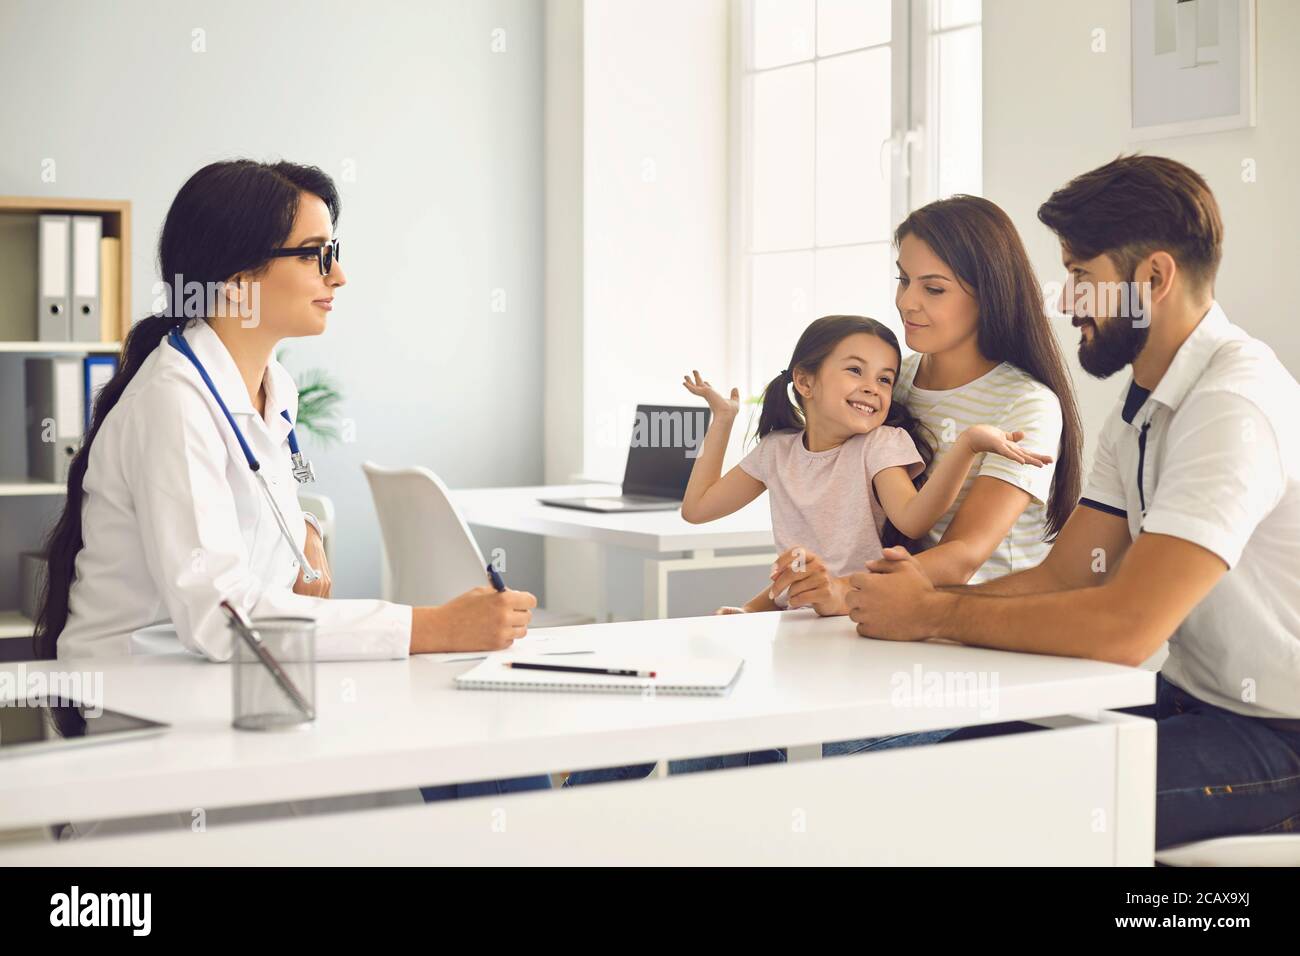 Glückliche Familie bei einer ärztlichen Beratung mit einem Arzt in einer Klinik. Stockfoto